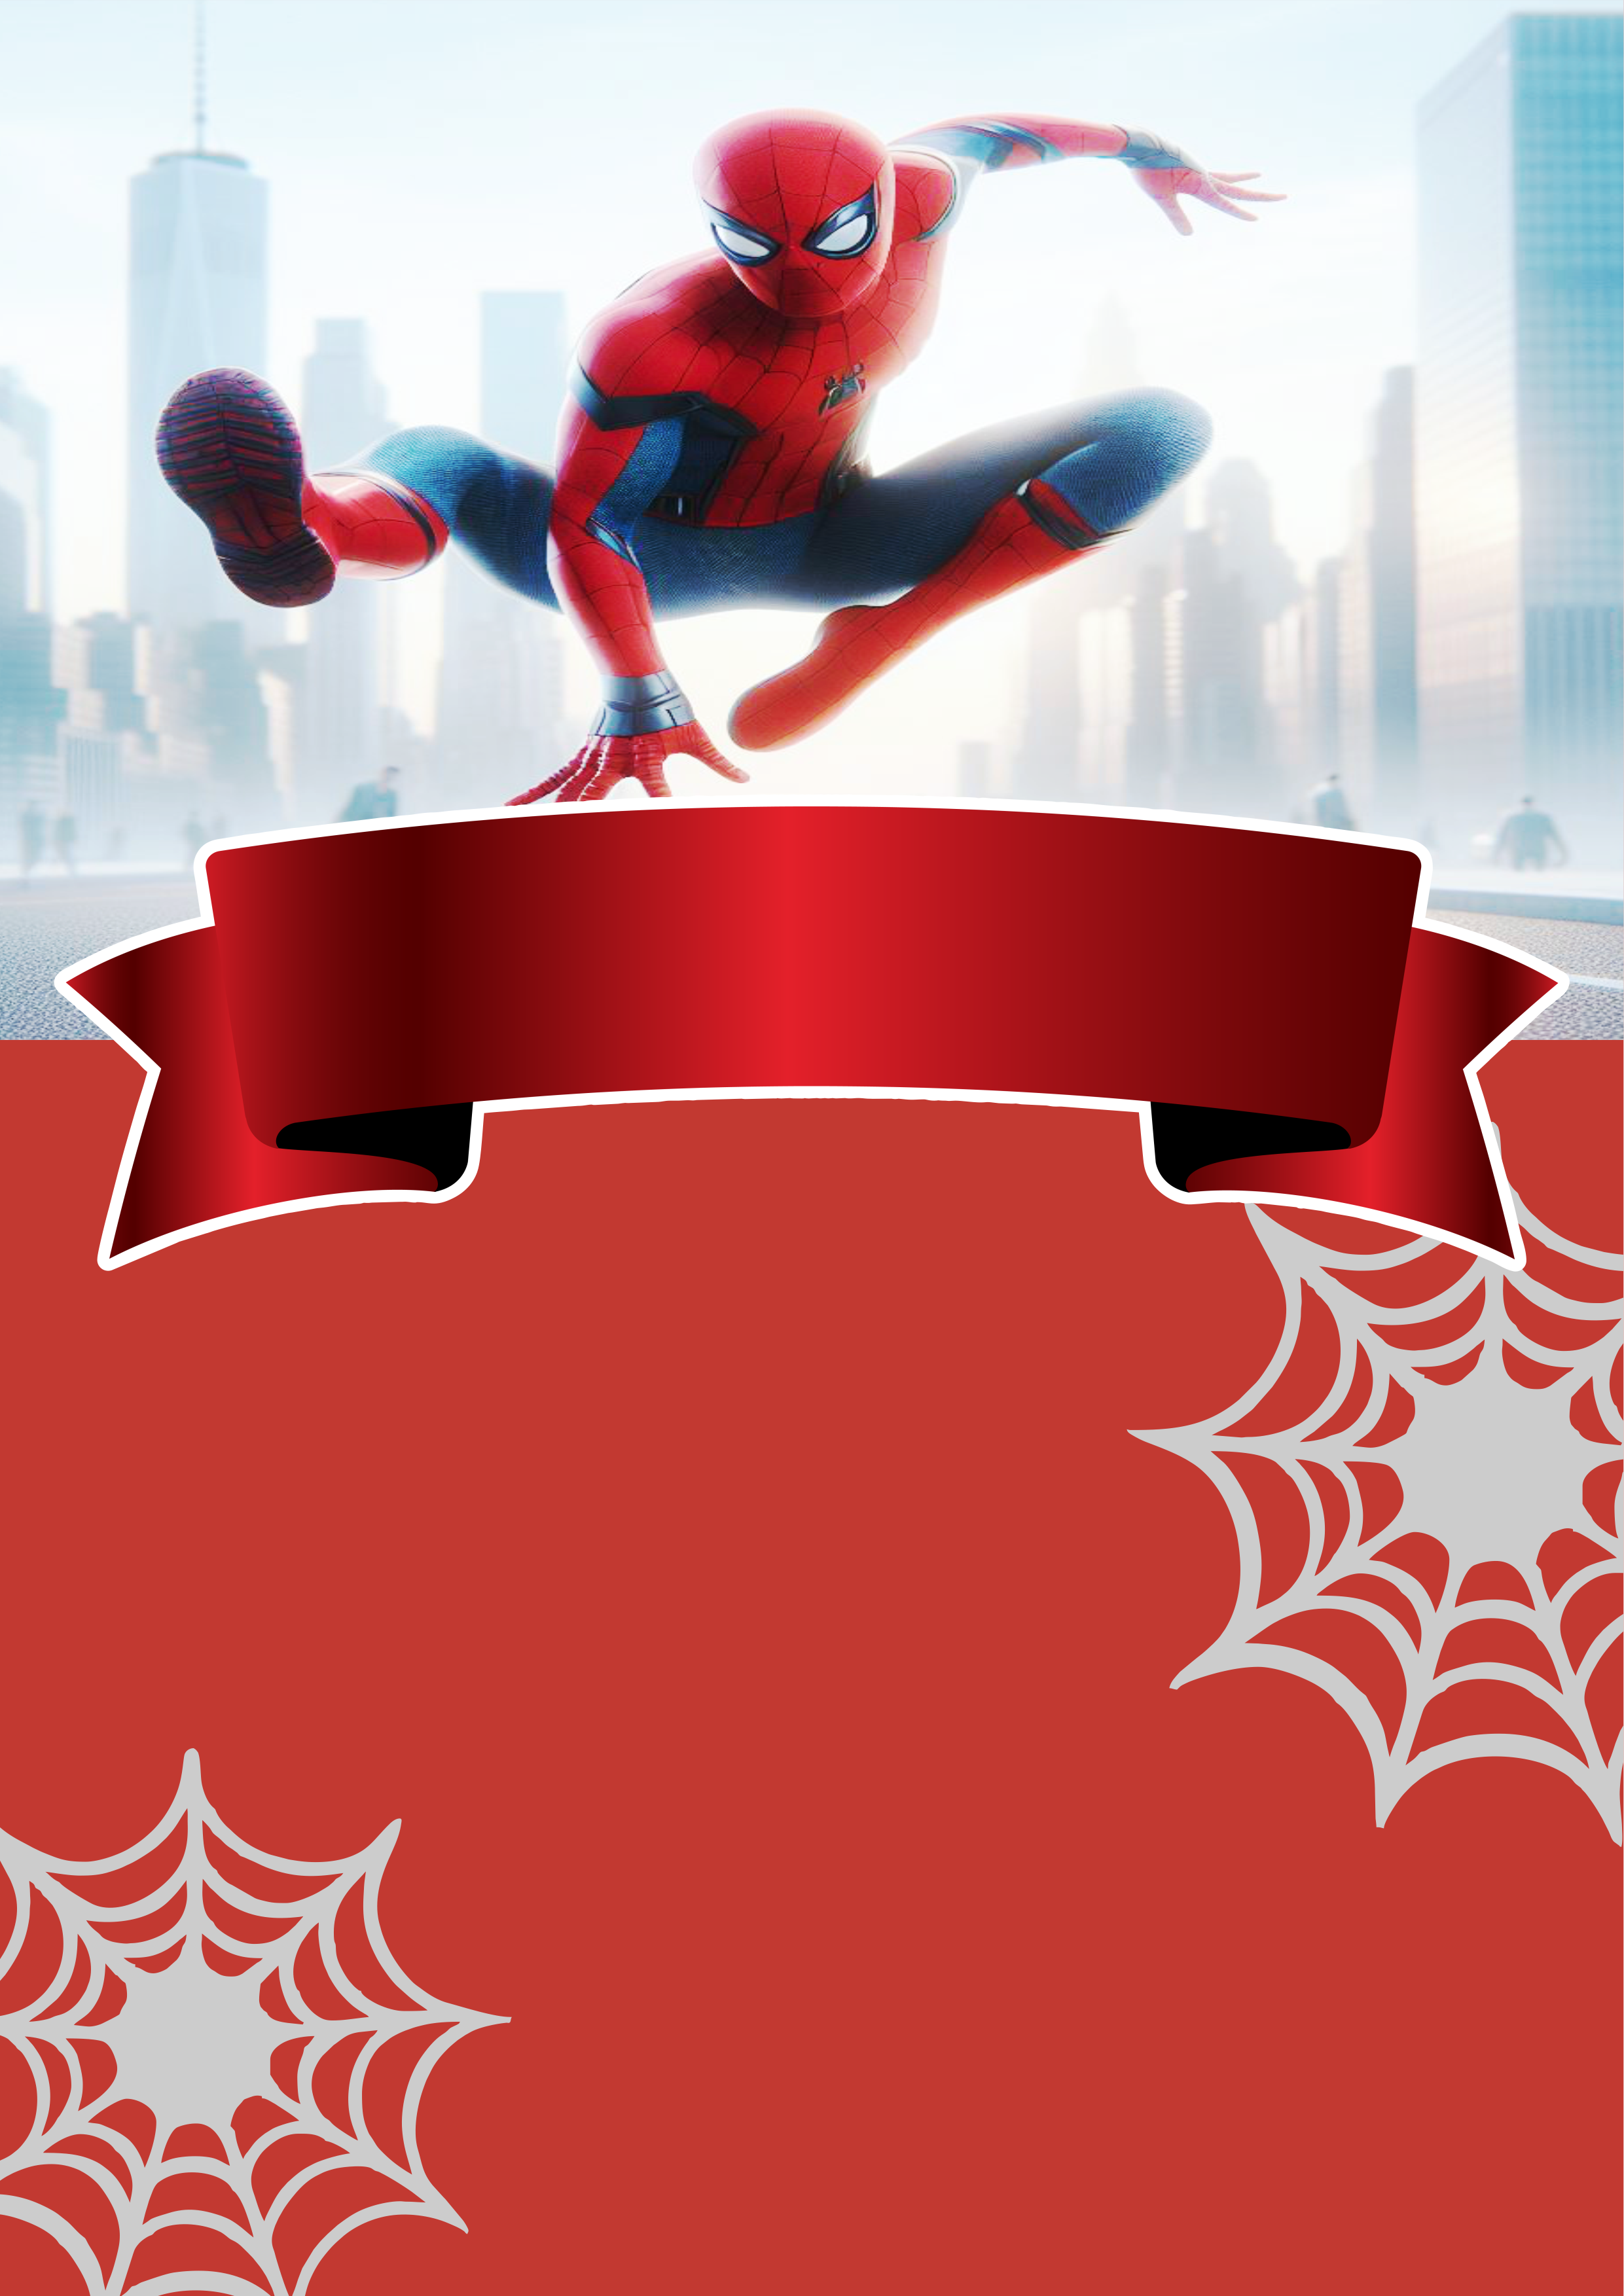 Convite Digital de aniversário para whatsapp Homem-aranha Spider-man super herói Marvel comics pronto para editar e imprimir png